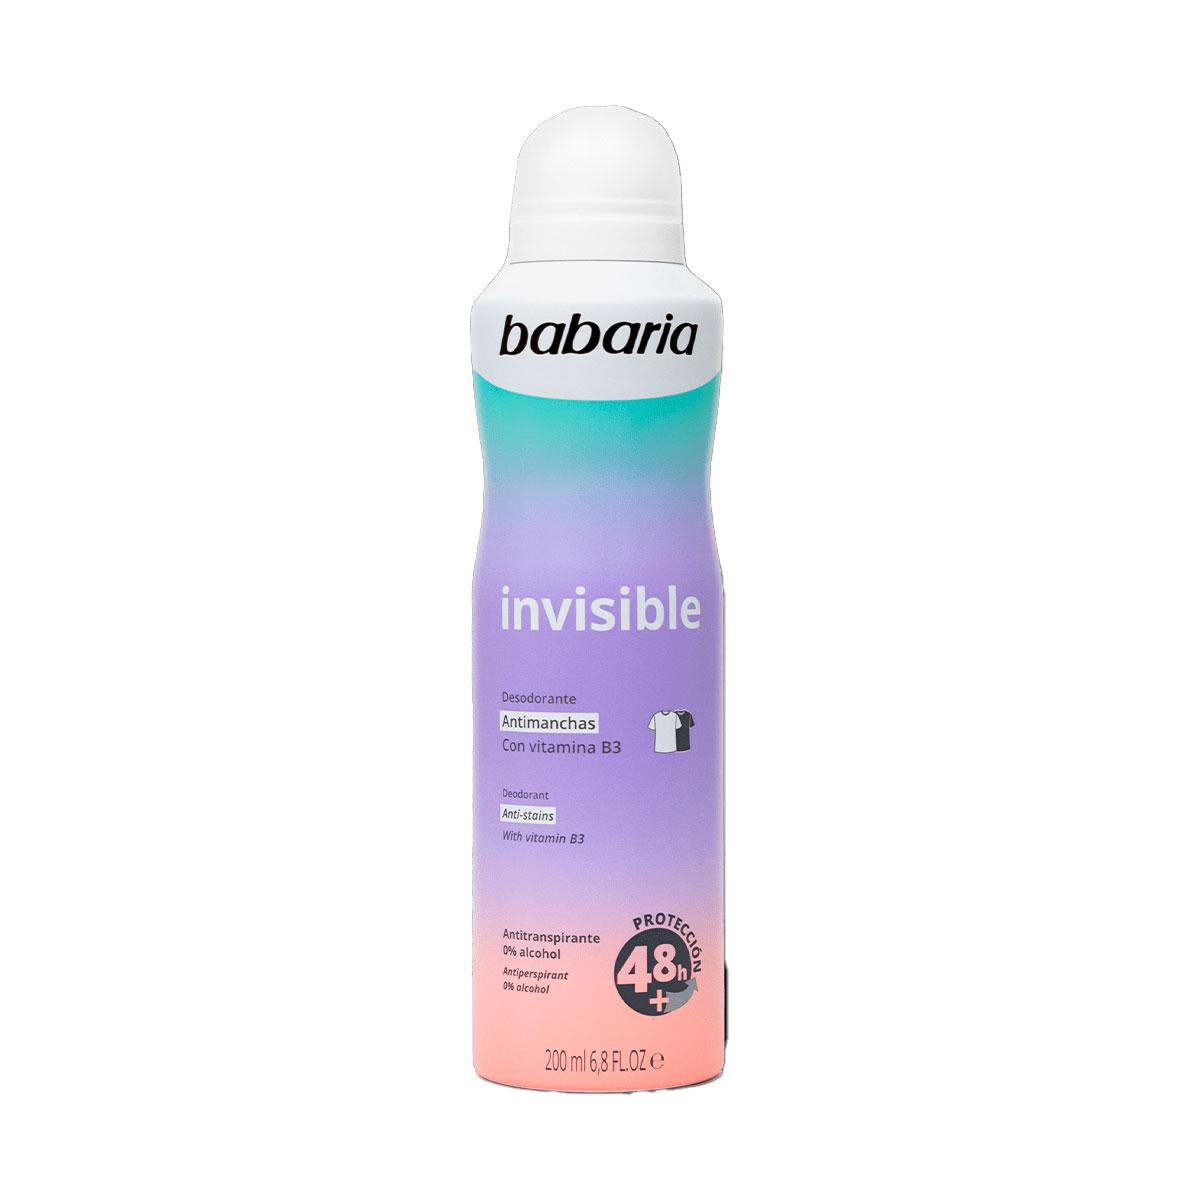  اسپری دئودورانت Invisible  -  Invisible Deodorant Spray